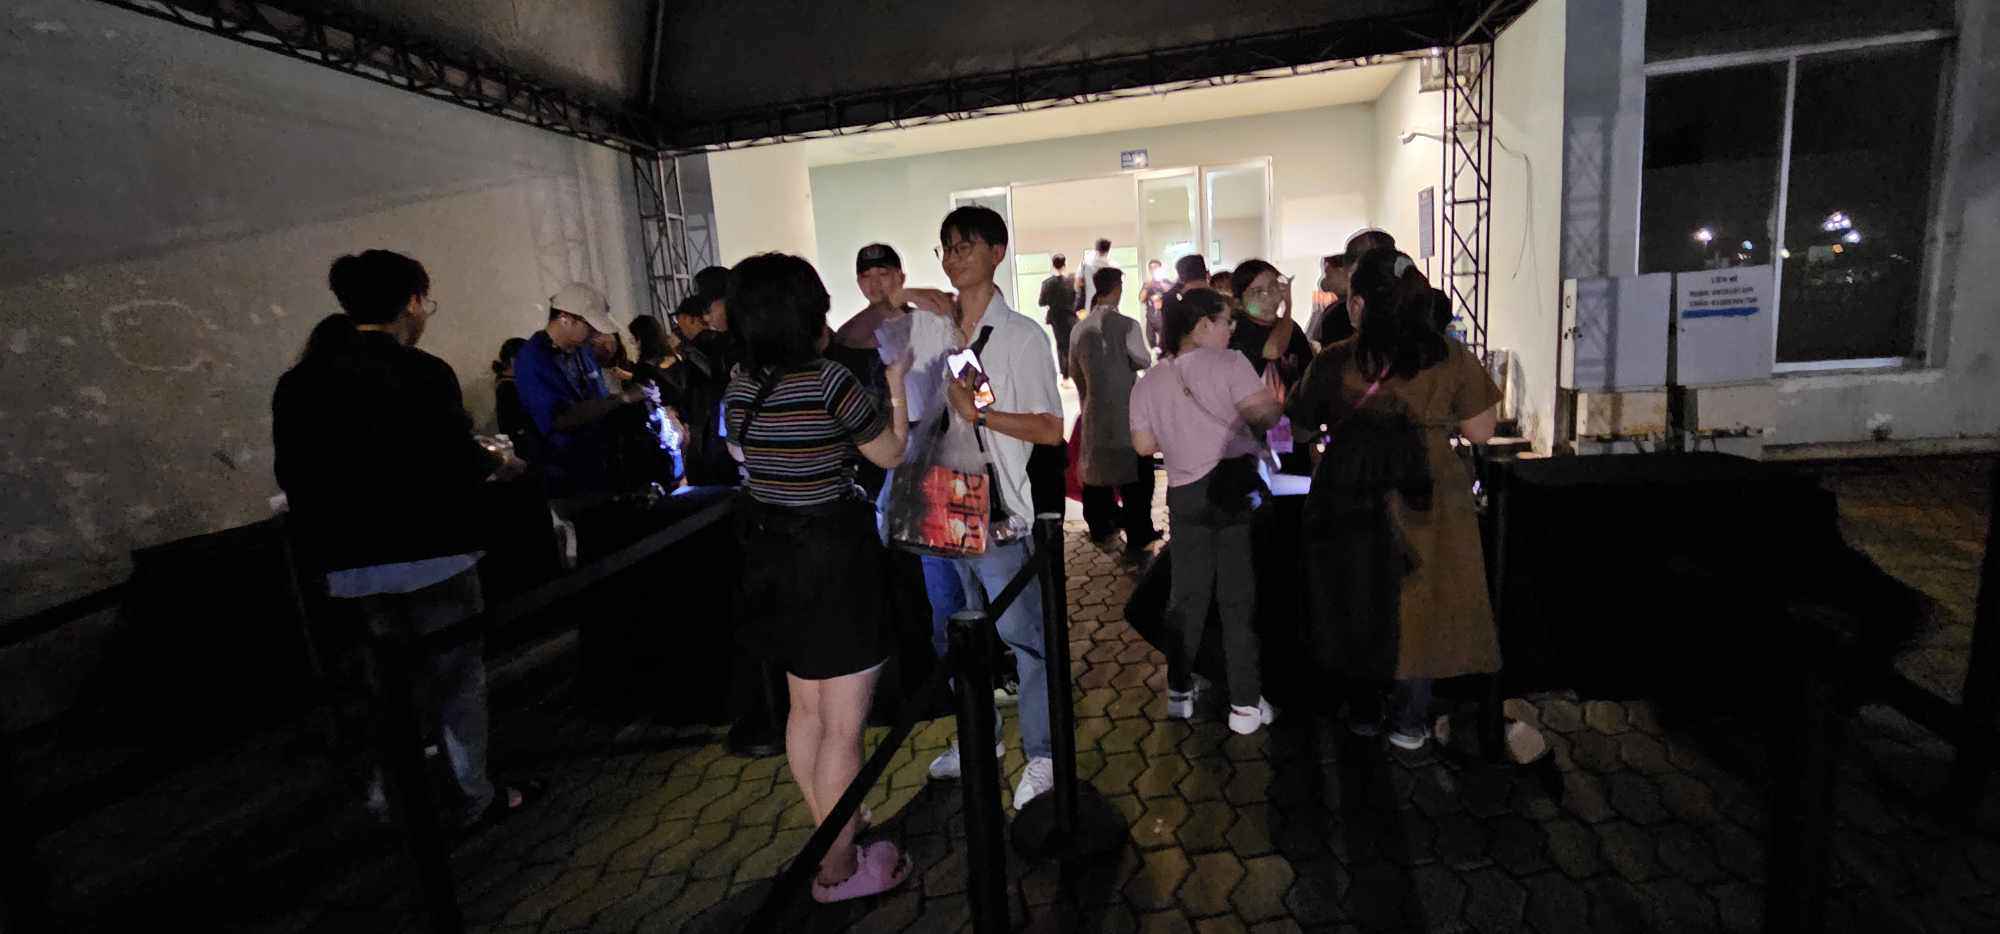 Concert Hoàng Thùy Linh: Trễ 30 phút để chờ khán giả, có cả fan U60 đi xem - 10